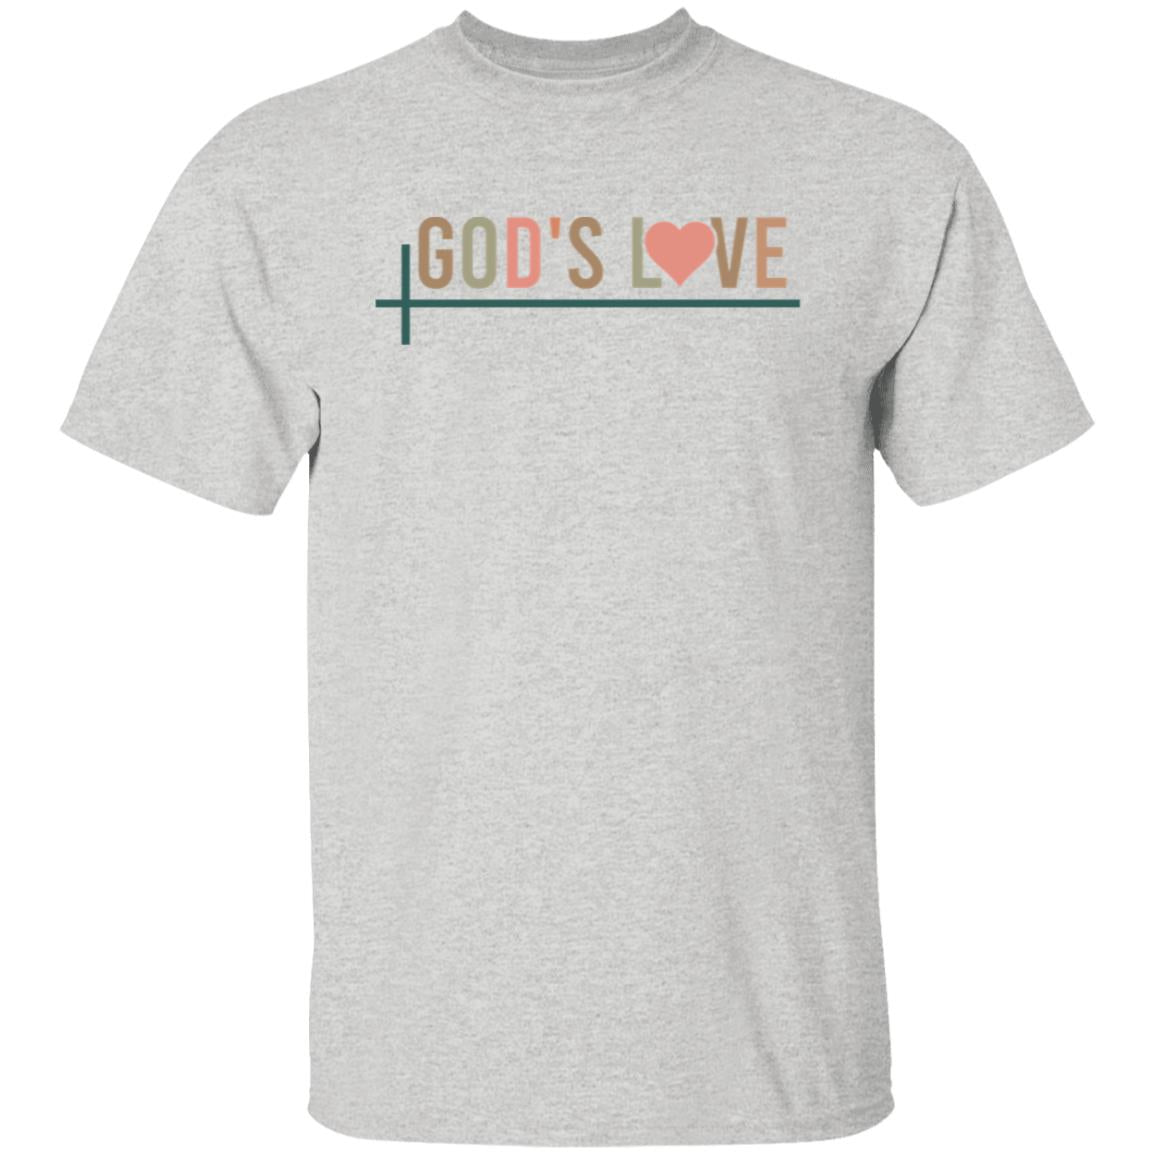 God's Love 5.3 oz. T-Shirt